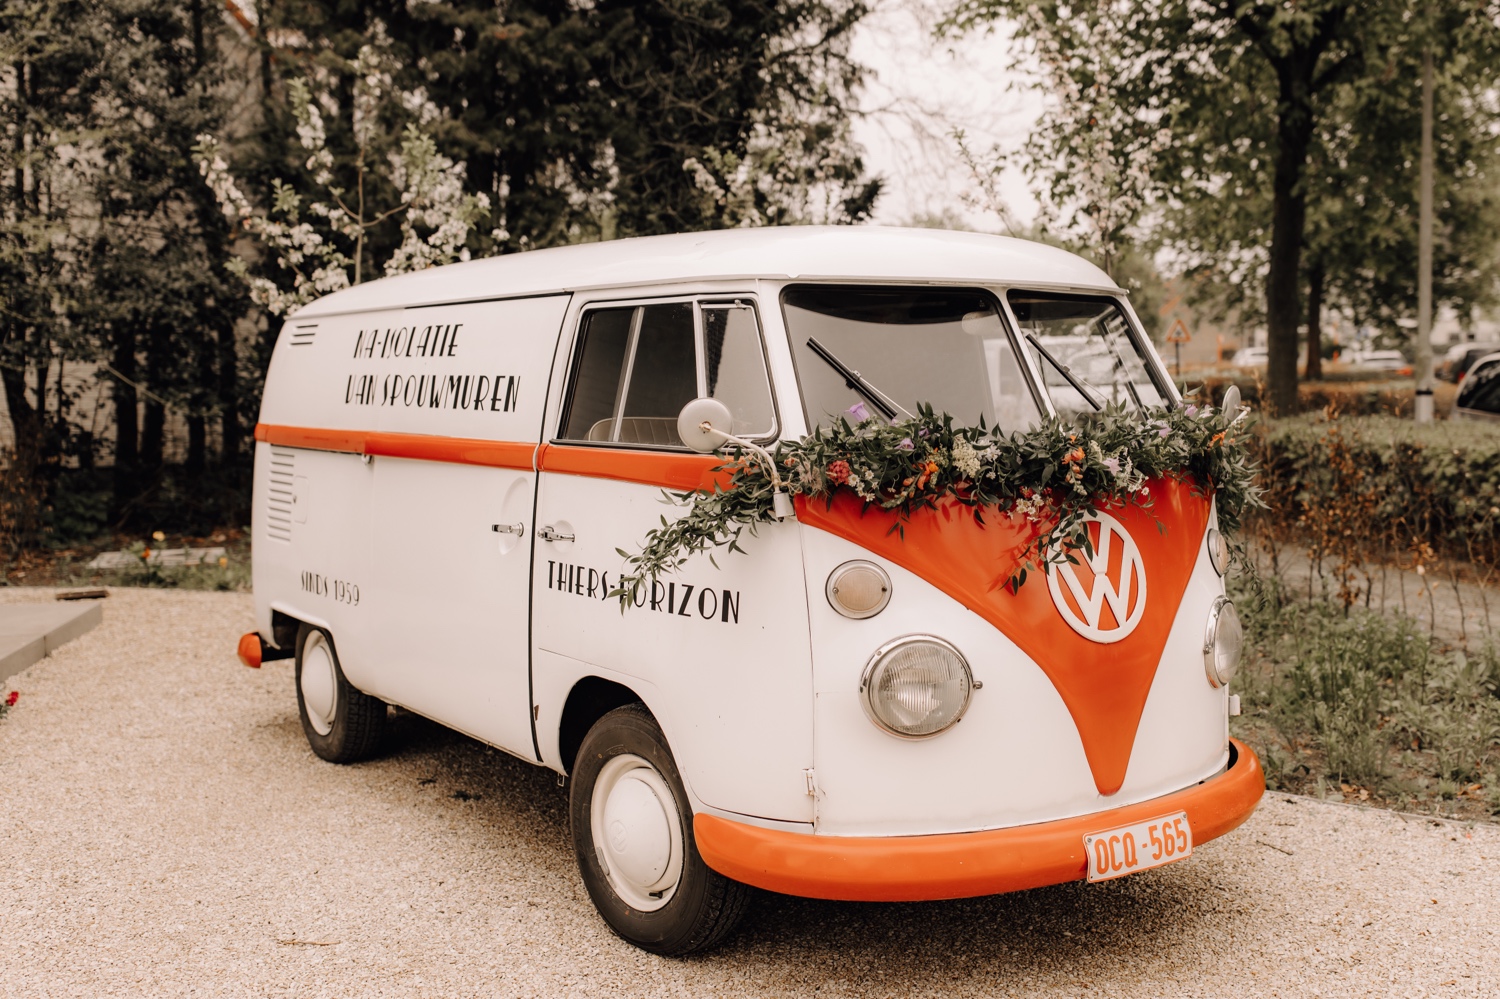 Huwelijksfotograaf Limburg - volkswagen busje van Thiers-horizon gedecoreerd met bloemen als bruidswagen